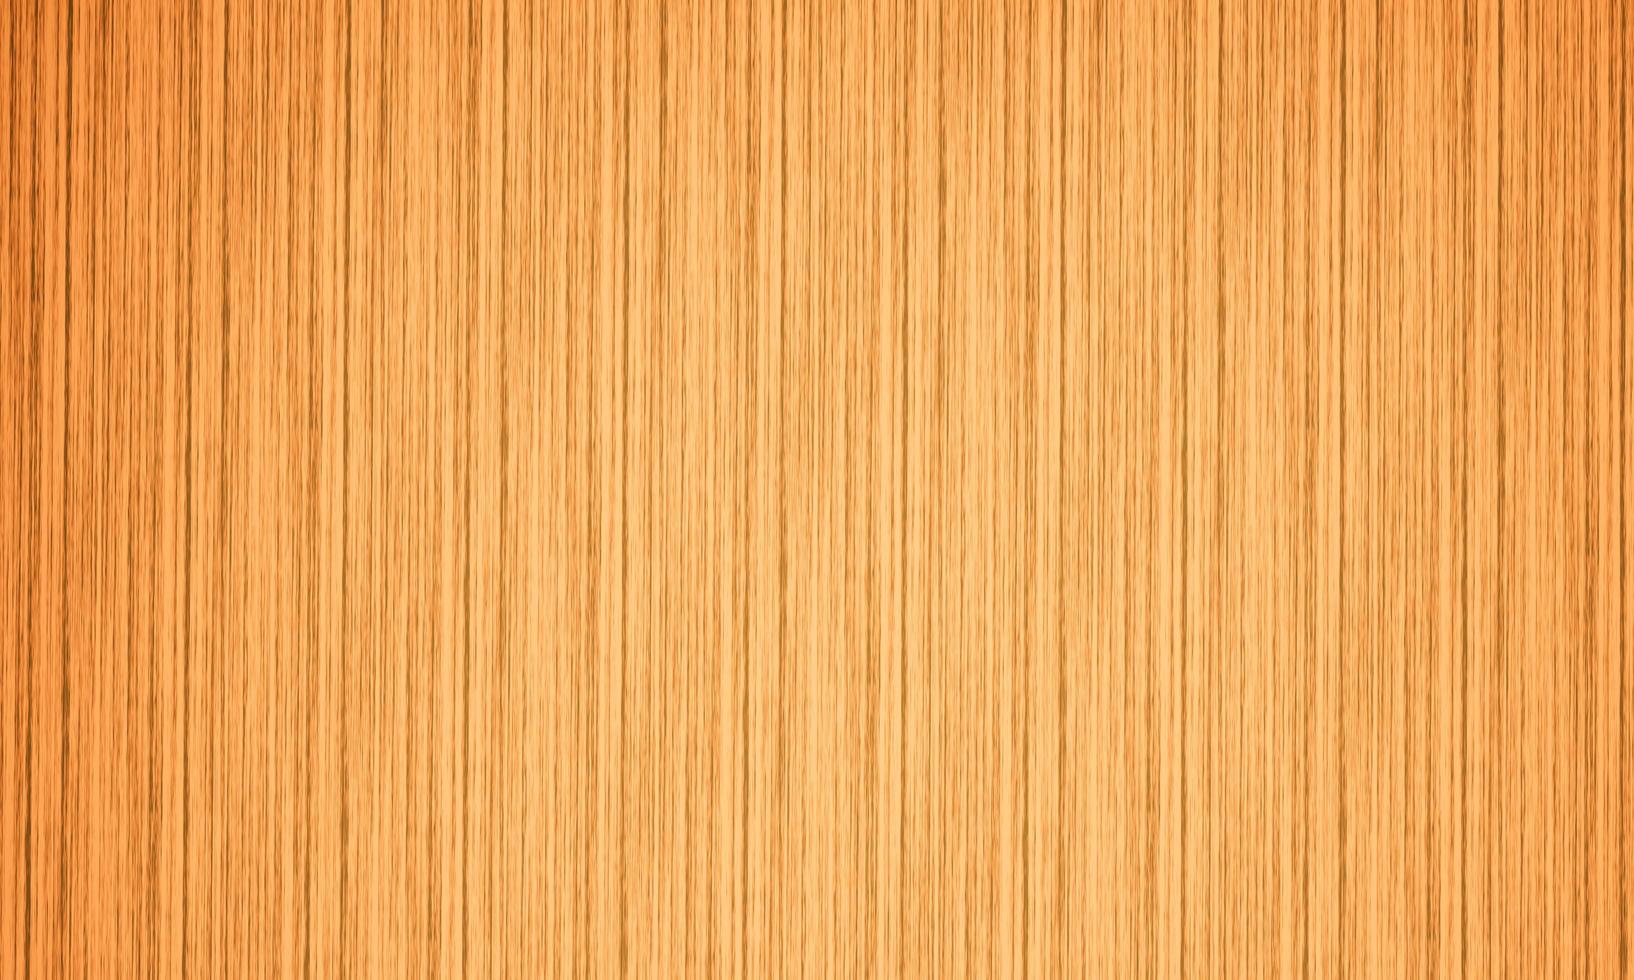 trama di venature del legno per creare sfondo o carta da parati. motivo a venature del legno, tonalità rossa e nera. motivo in legno di teak rosso. foto